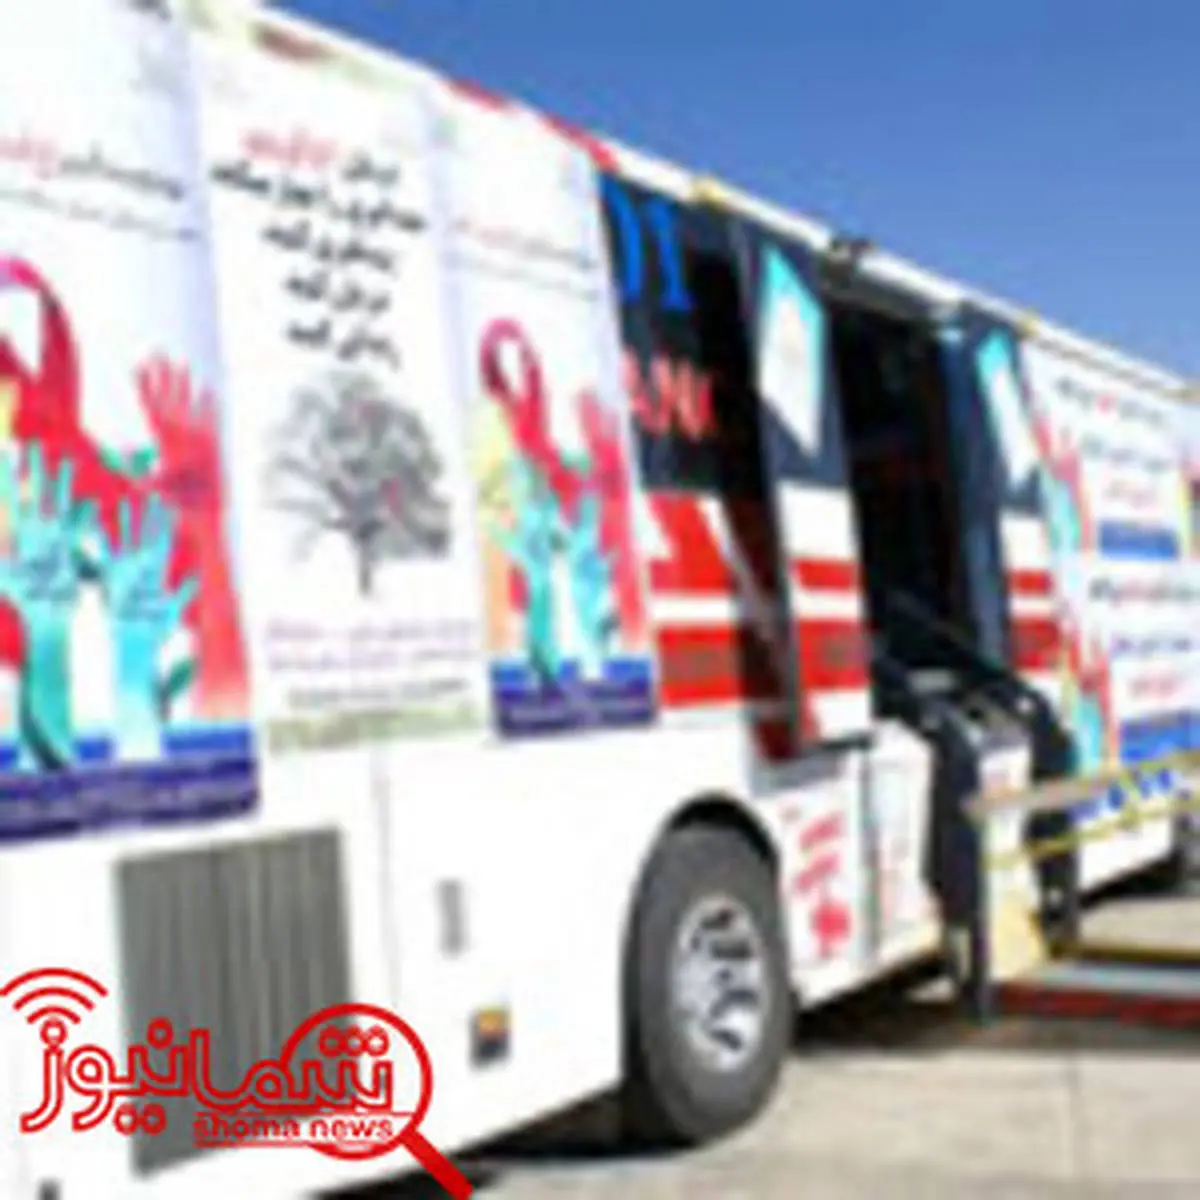 واکنش به موضع وزارت بهداشت درباره اتوبوس ایدز